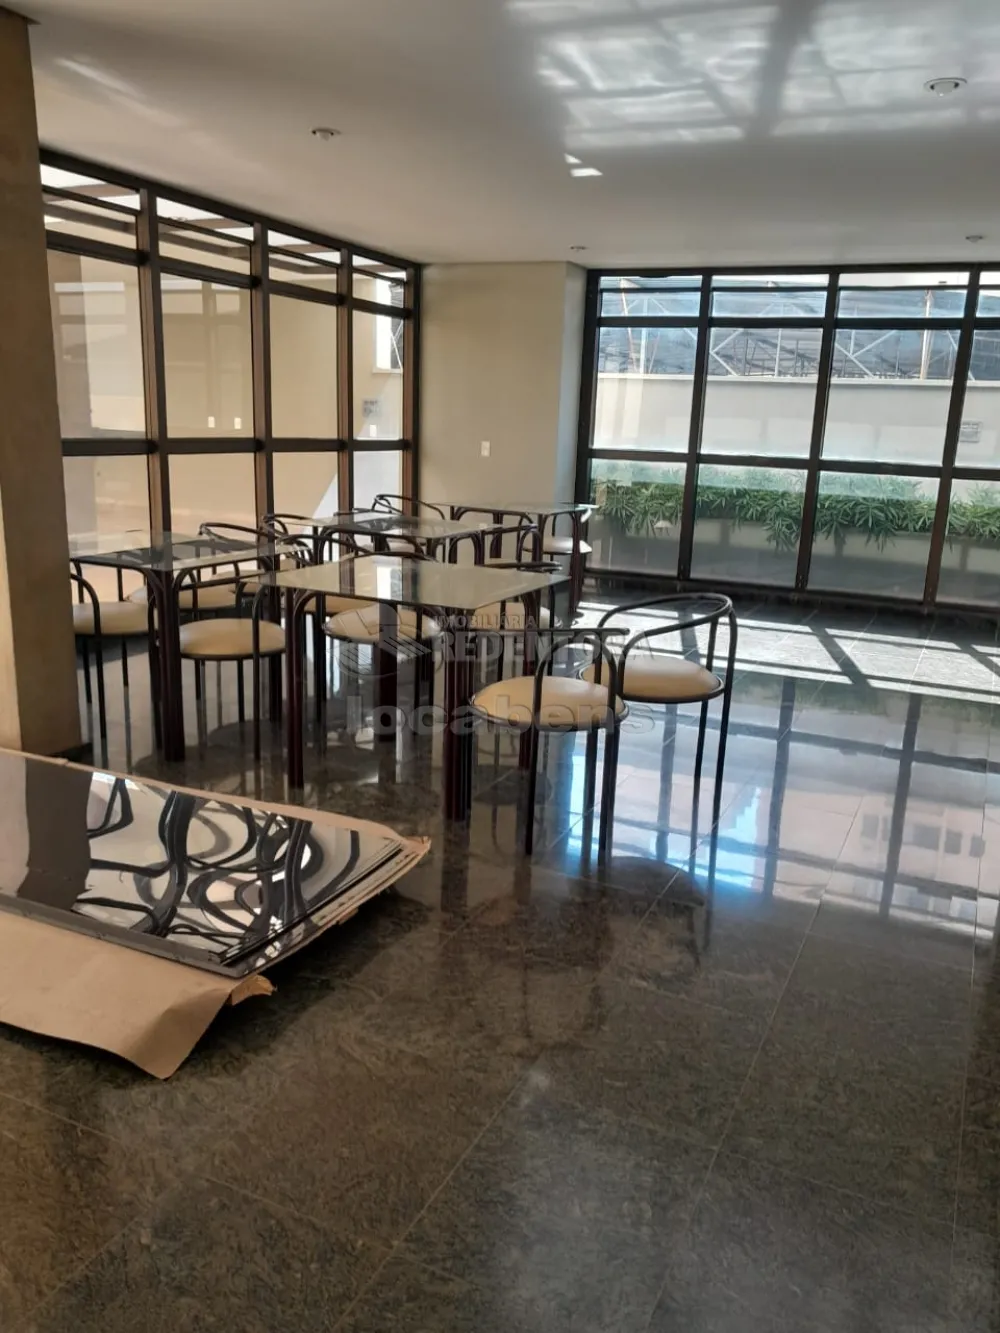 Alugar Apartamento / Padrão em São José do Rio Preto R$ 700,00 - Foto 25